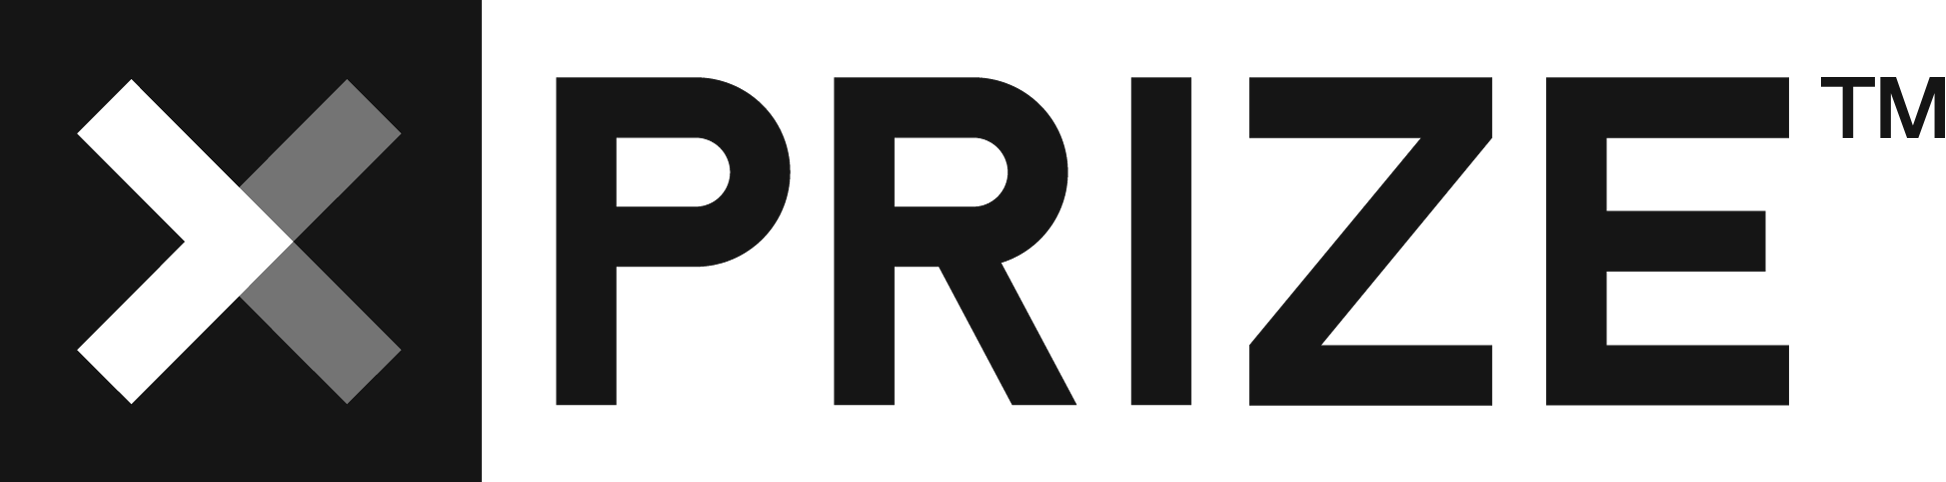 XPRIZE-Logo-Inline-Black